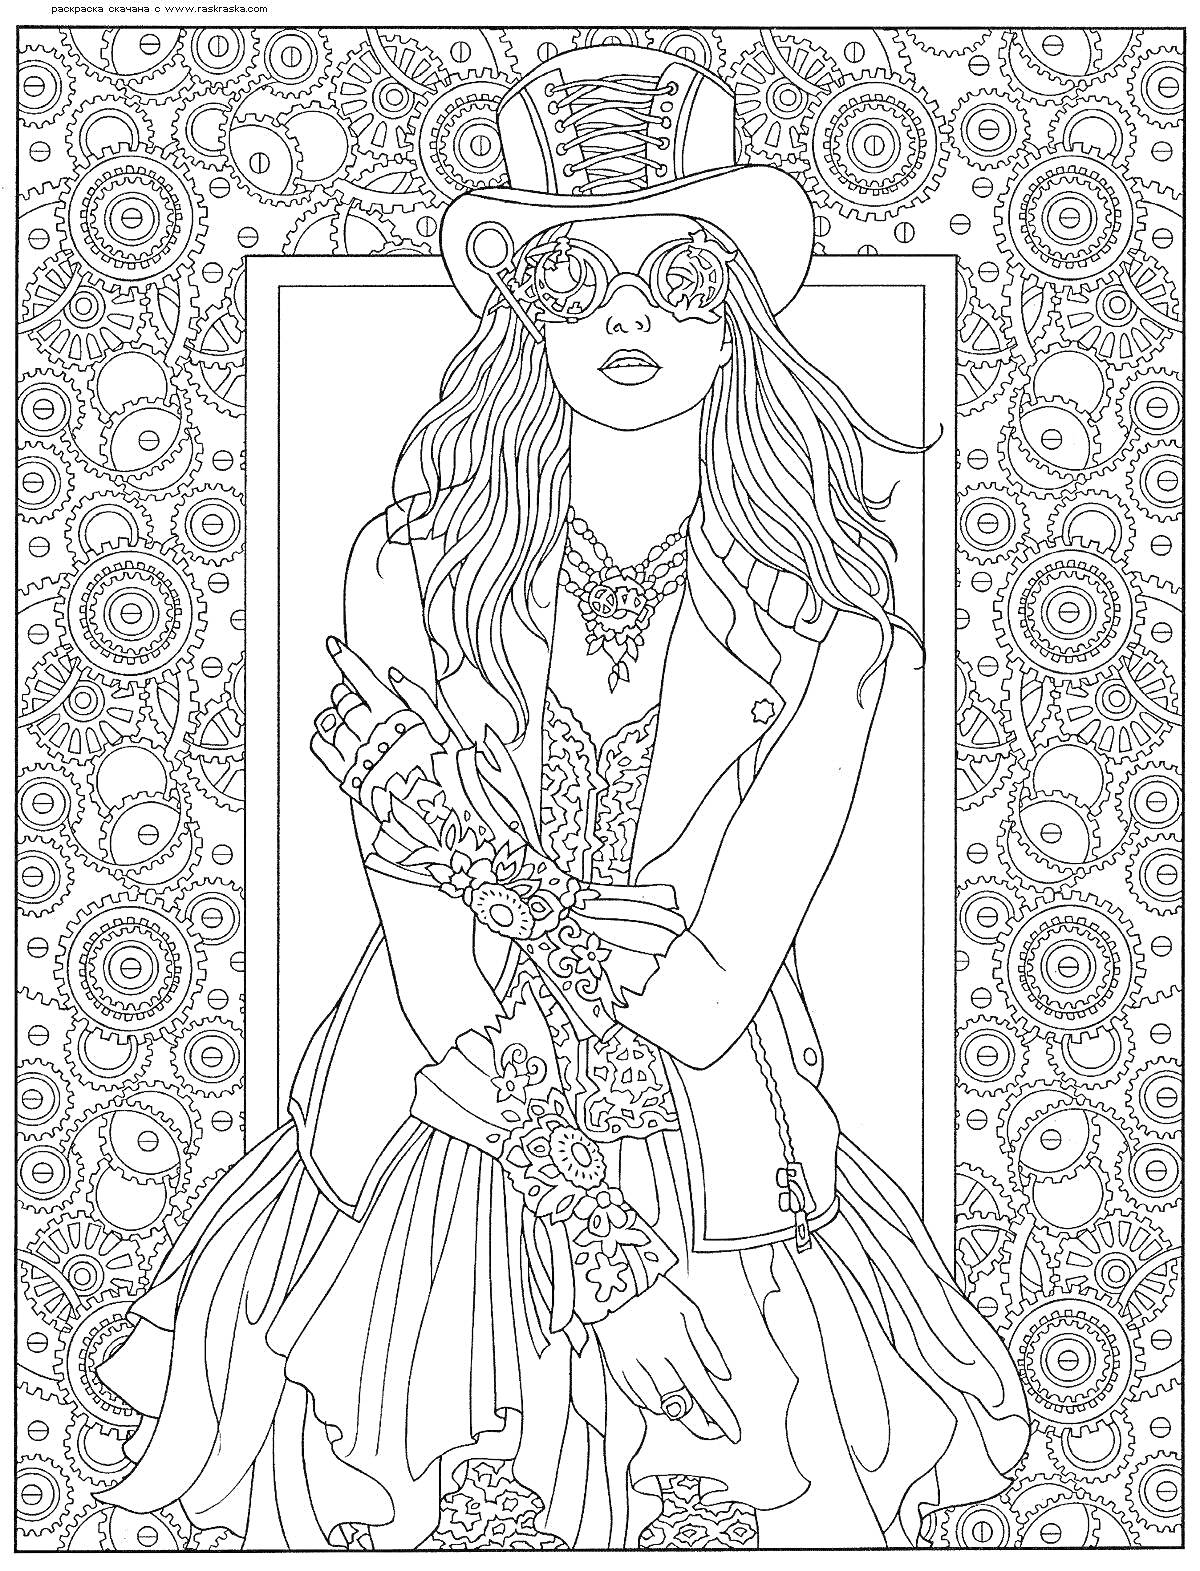 Раскраска Девушка в стиле стимпанк в шляпе и очках на фоне узорчатого орнамента